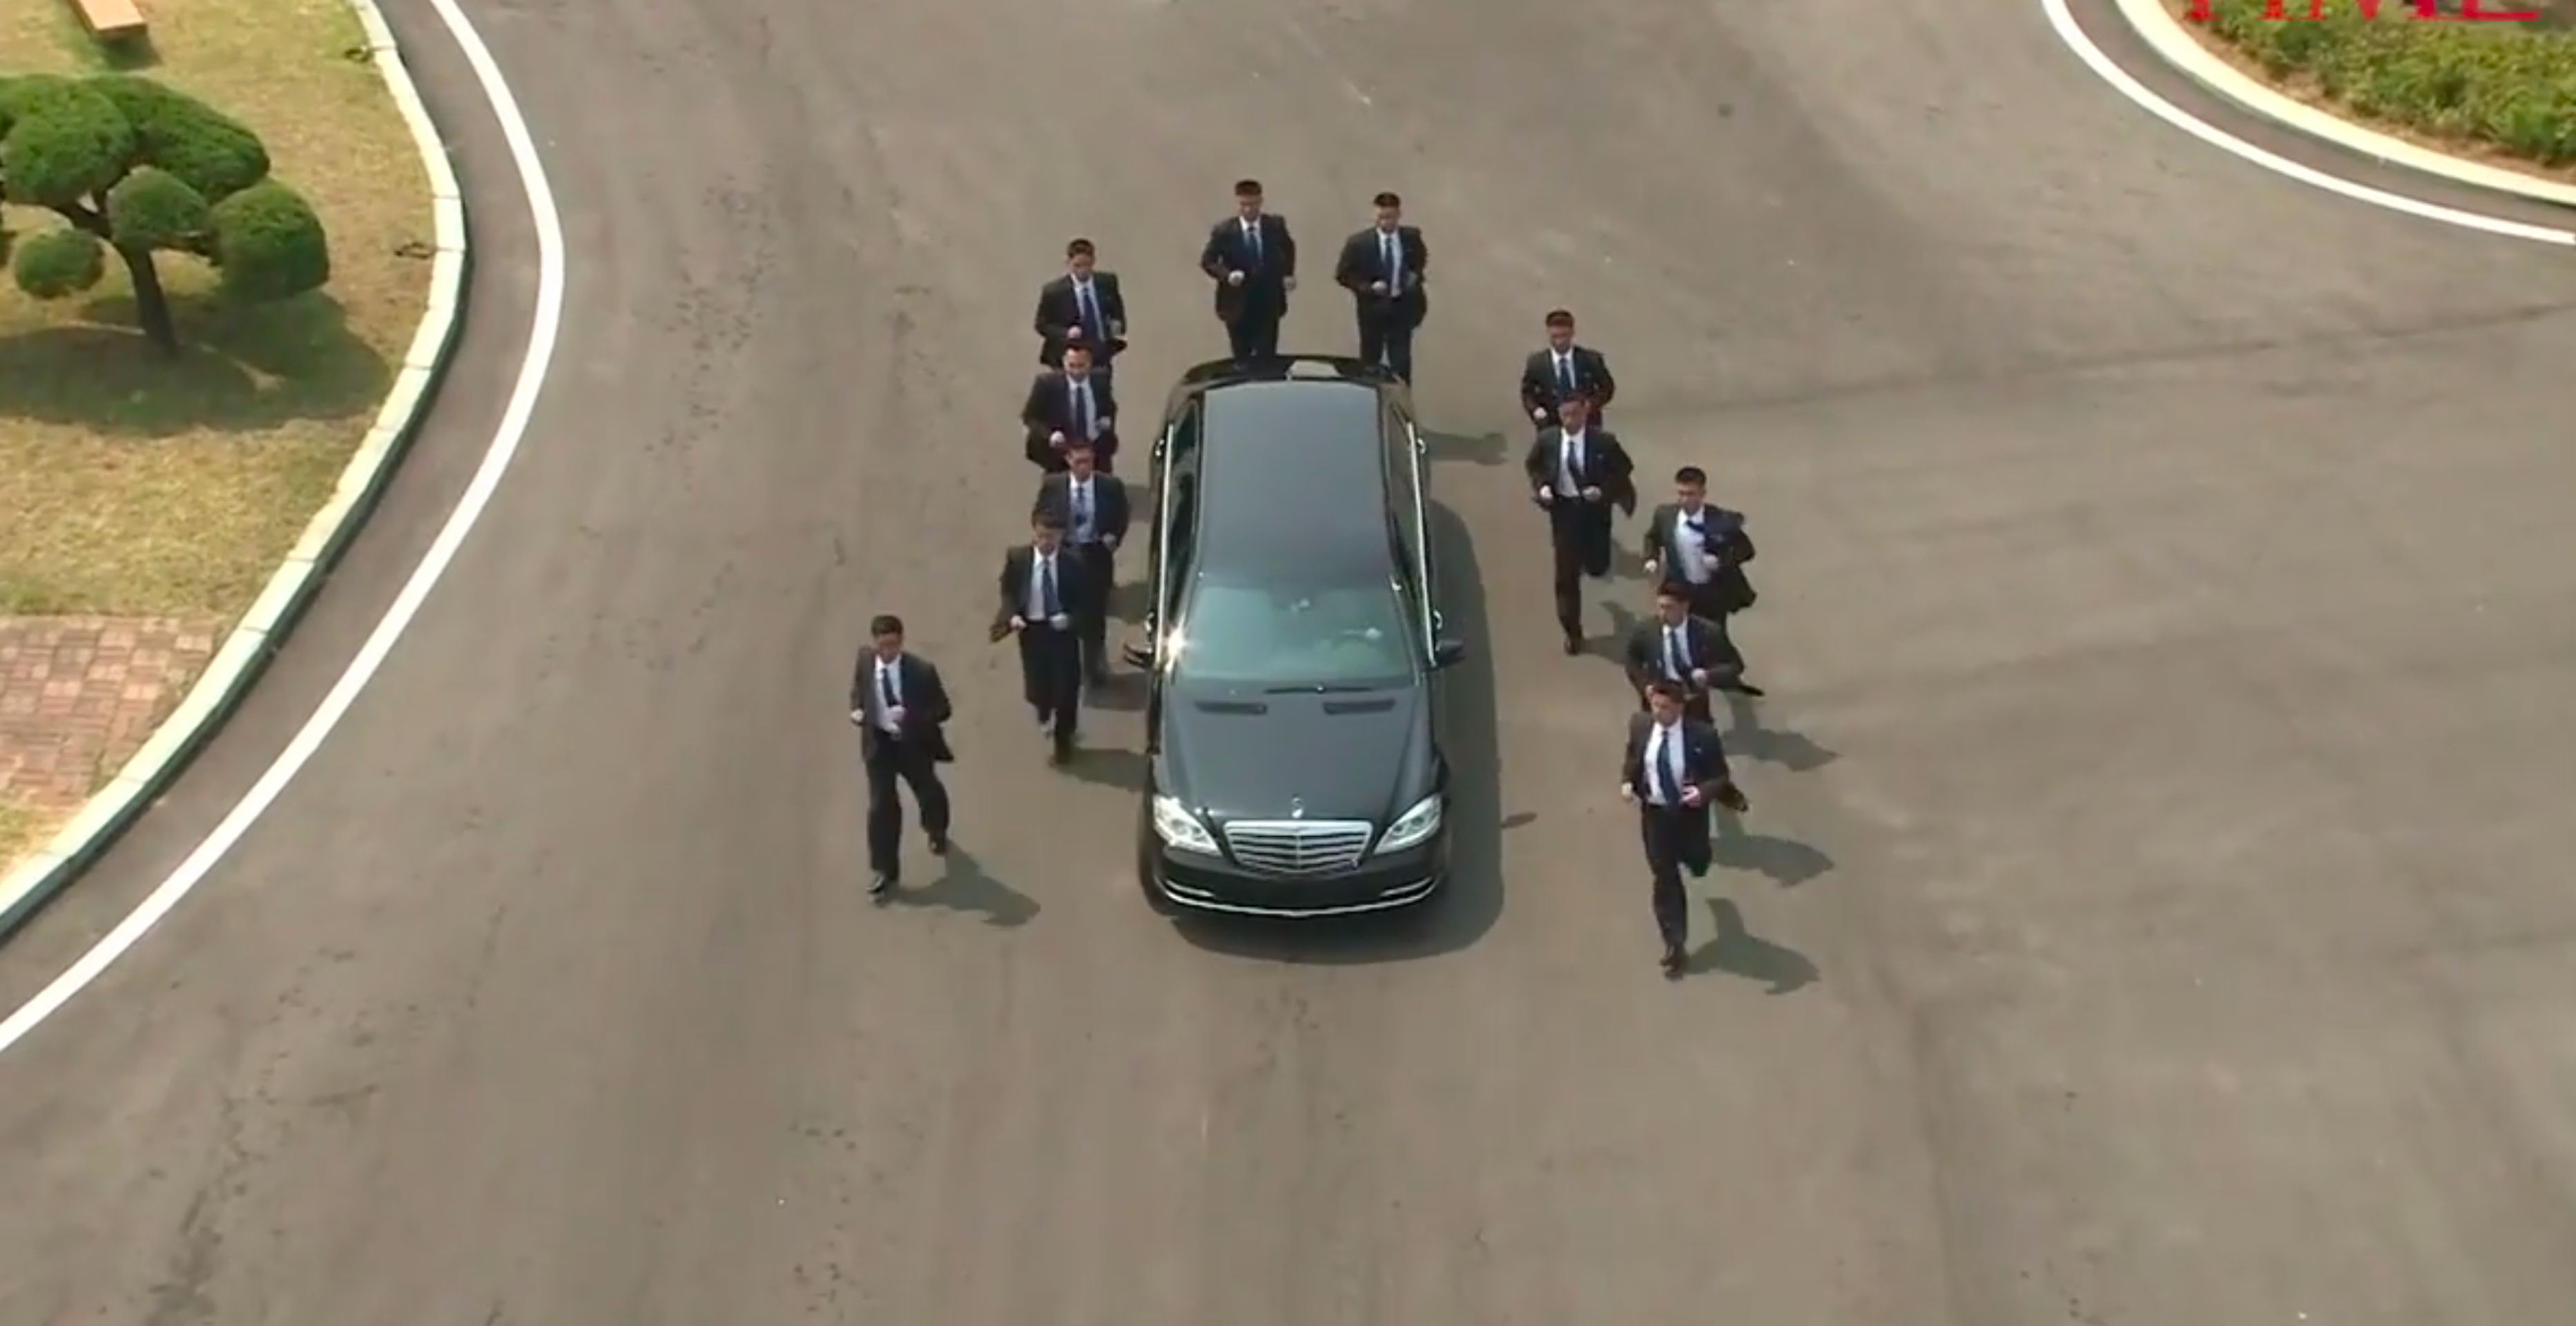 Kimovi bodyguardi - Fotogalerie: Kim Čong-un a jeho pancéřované limuzíny (6/6)